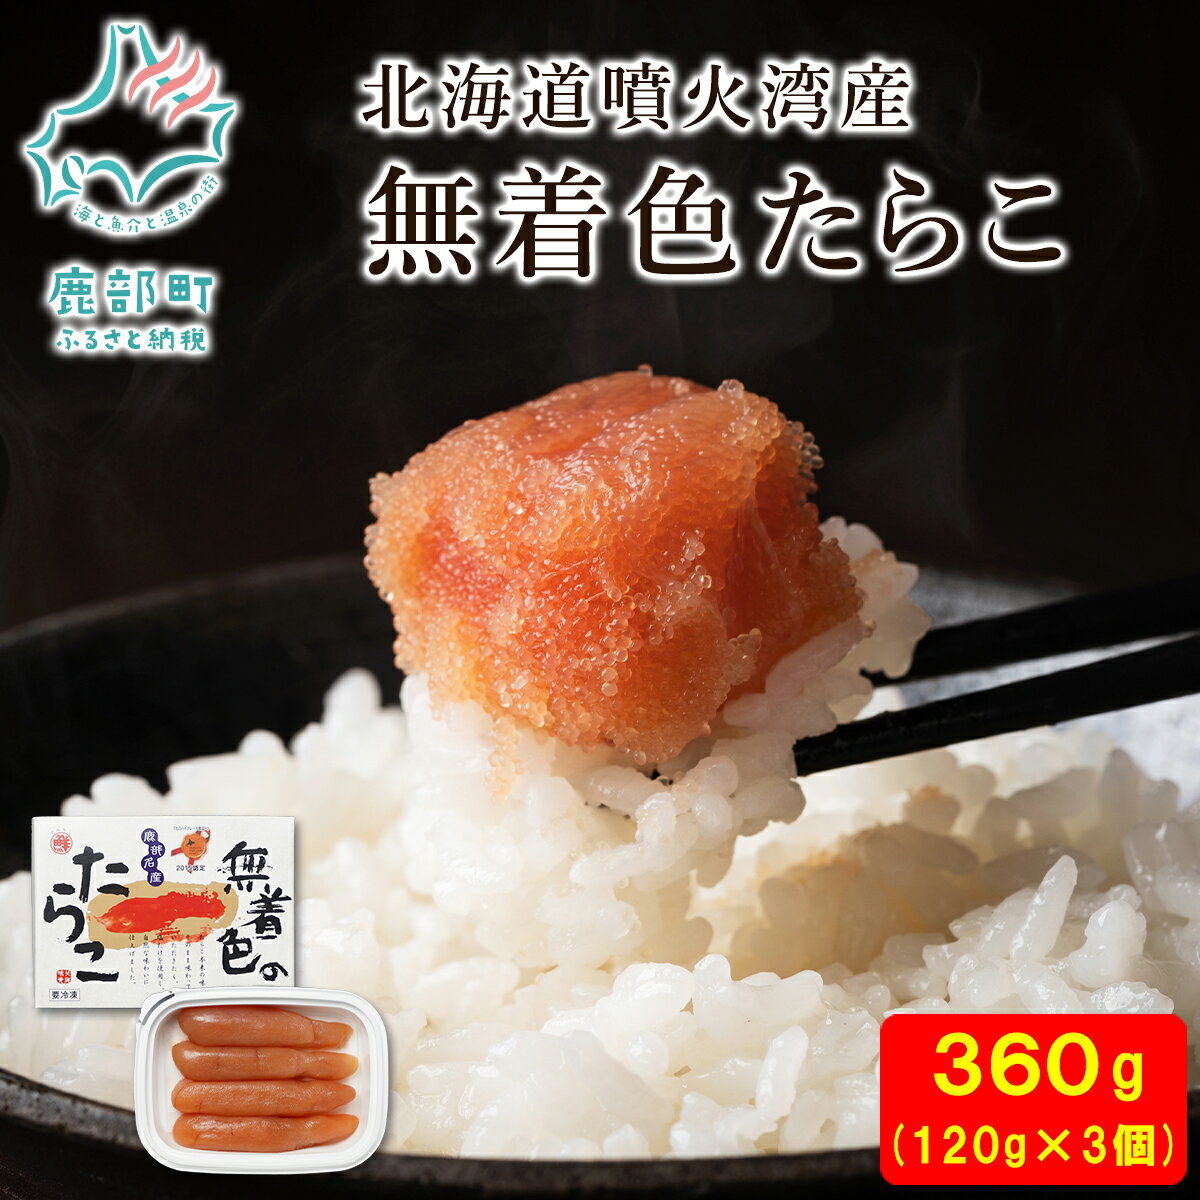 たらこ 丸鮮道場水産 北海道 無着色たらこ 120g×3個 (360g)タラコ 魚介類